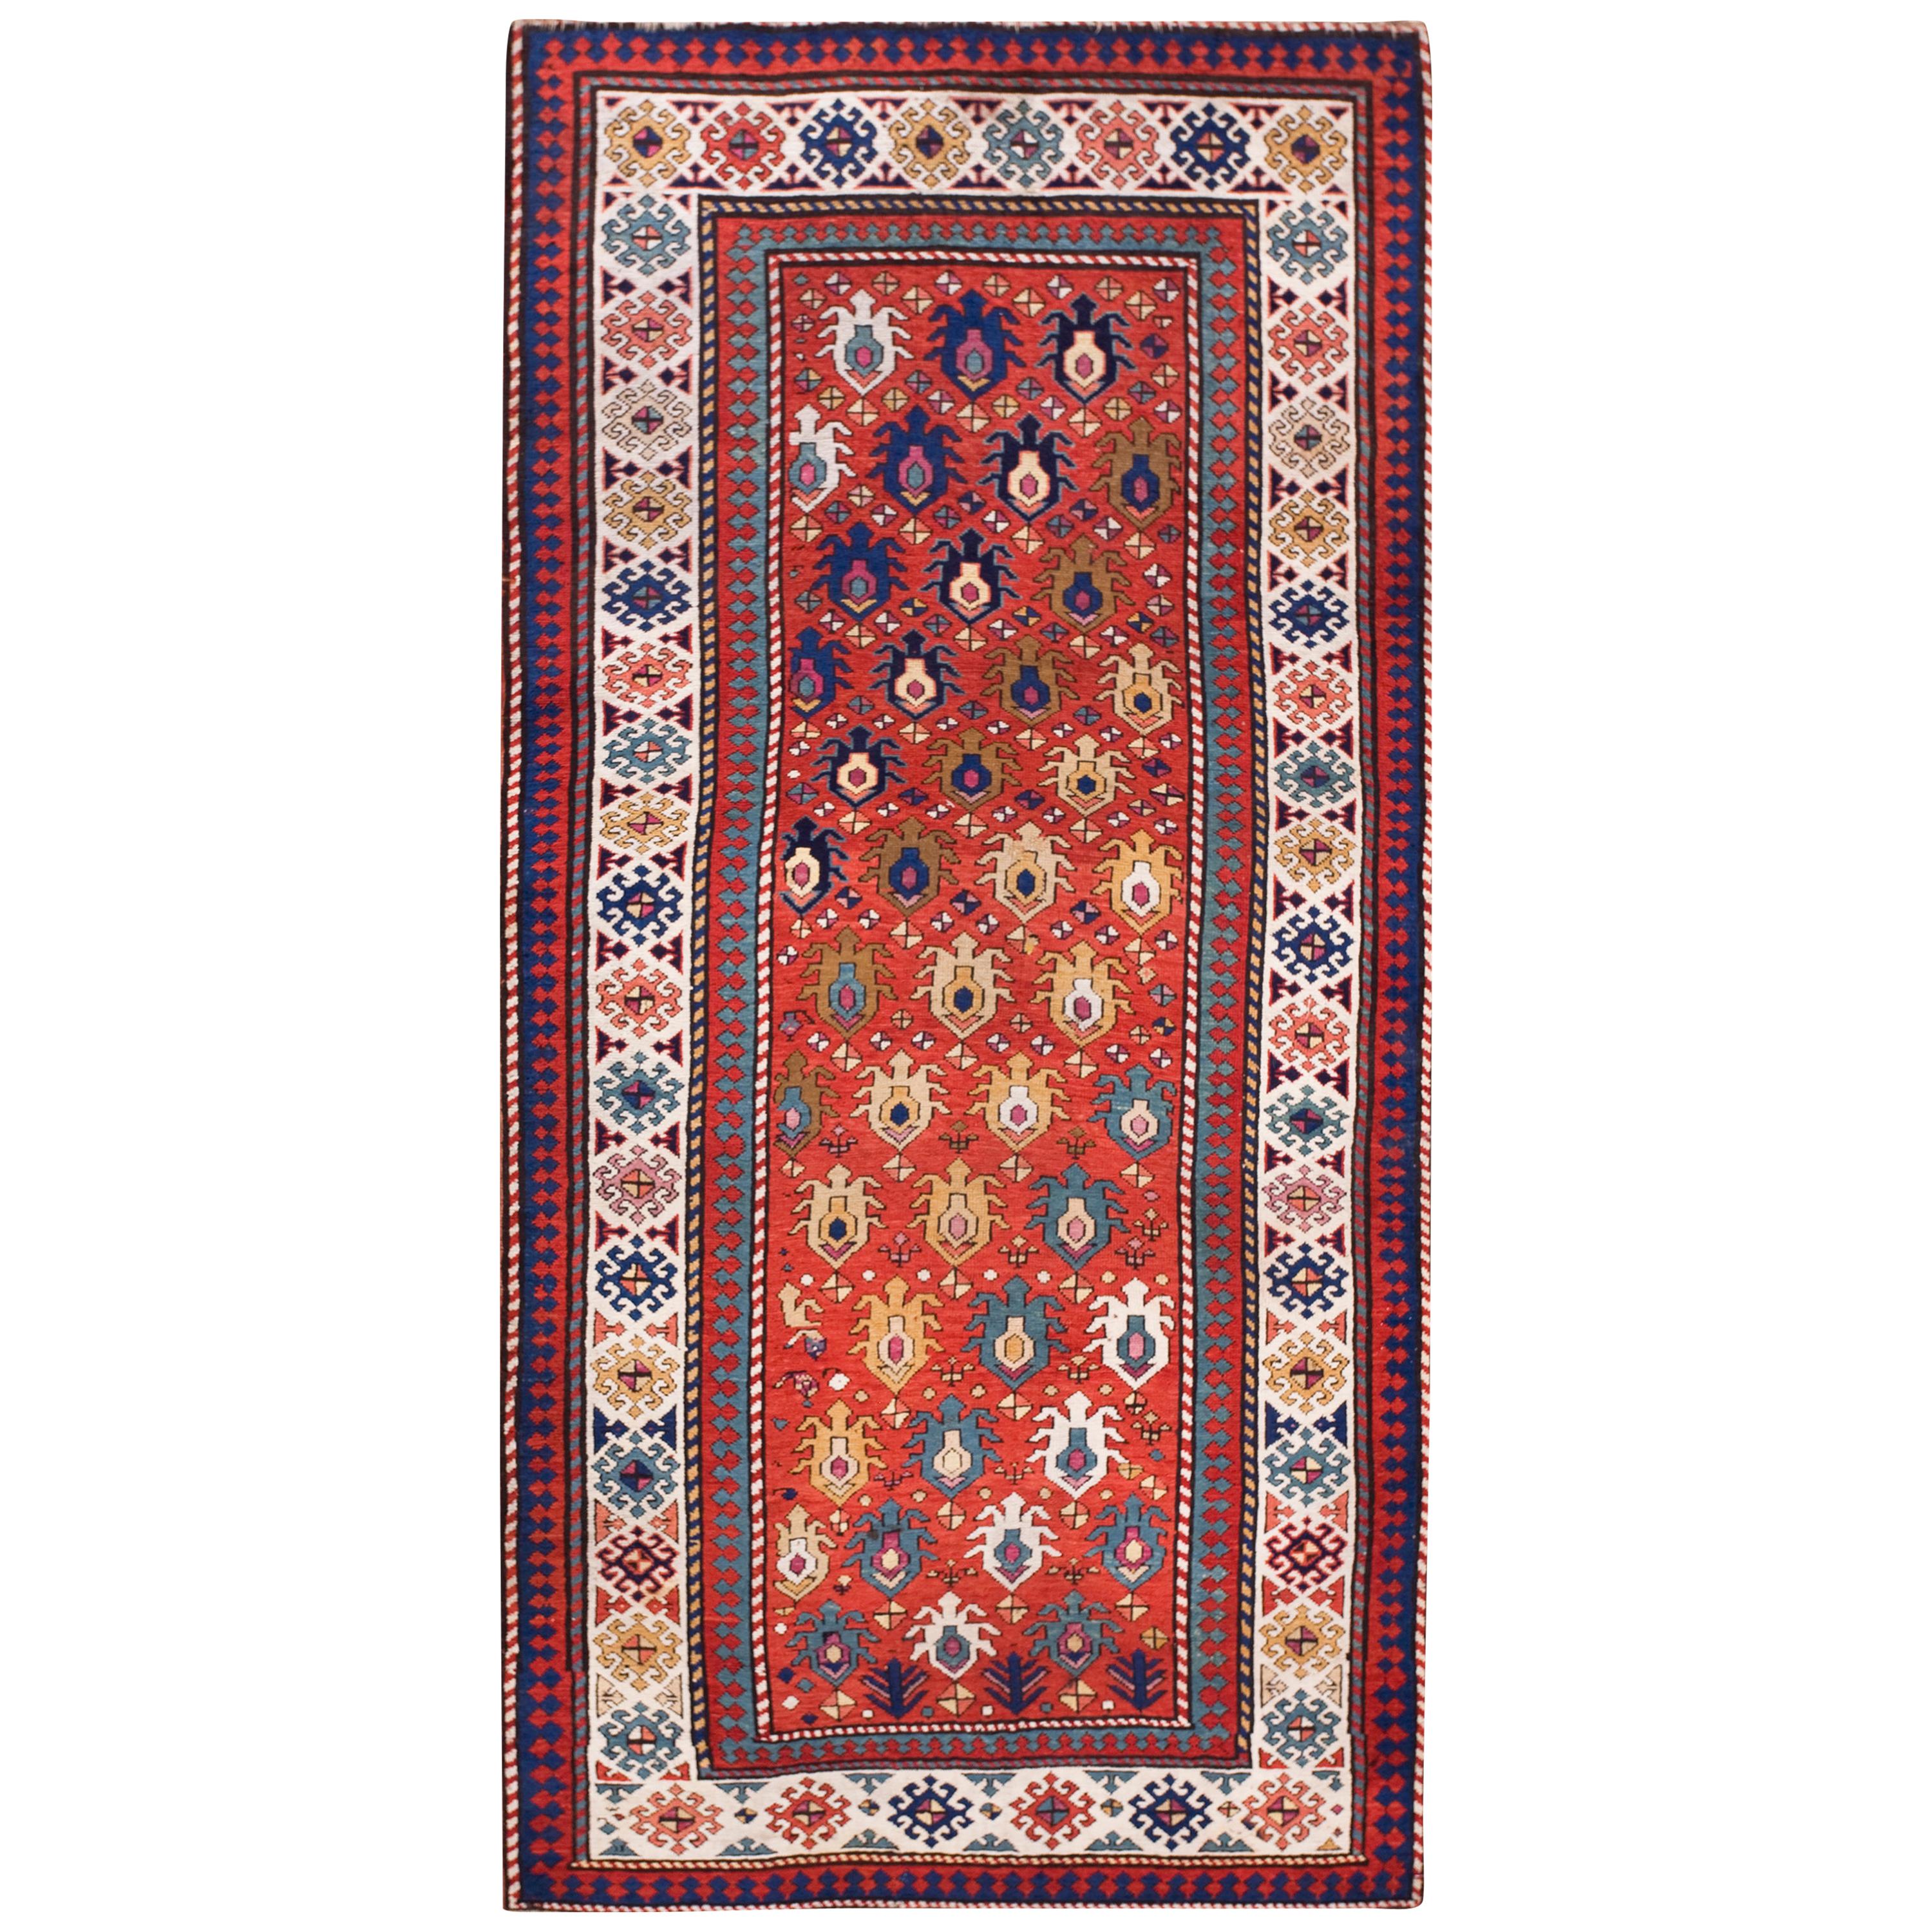 19th Century Caucasian Kazak Carpet ( 4' x 8'6" - 122 x 260 )